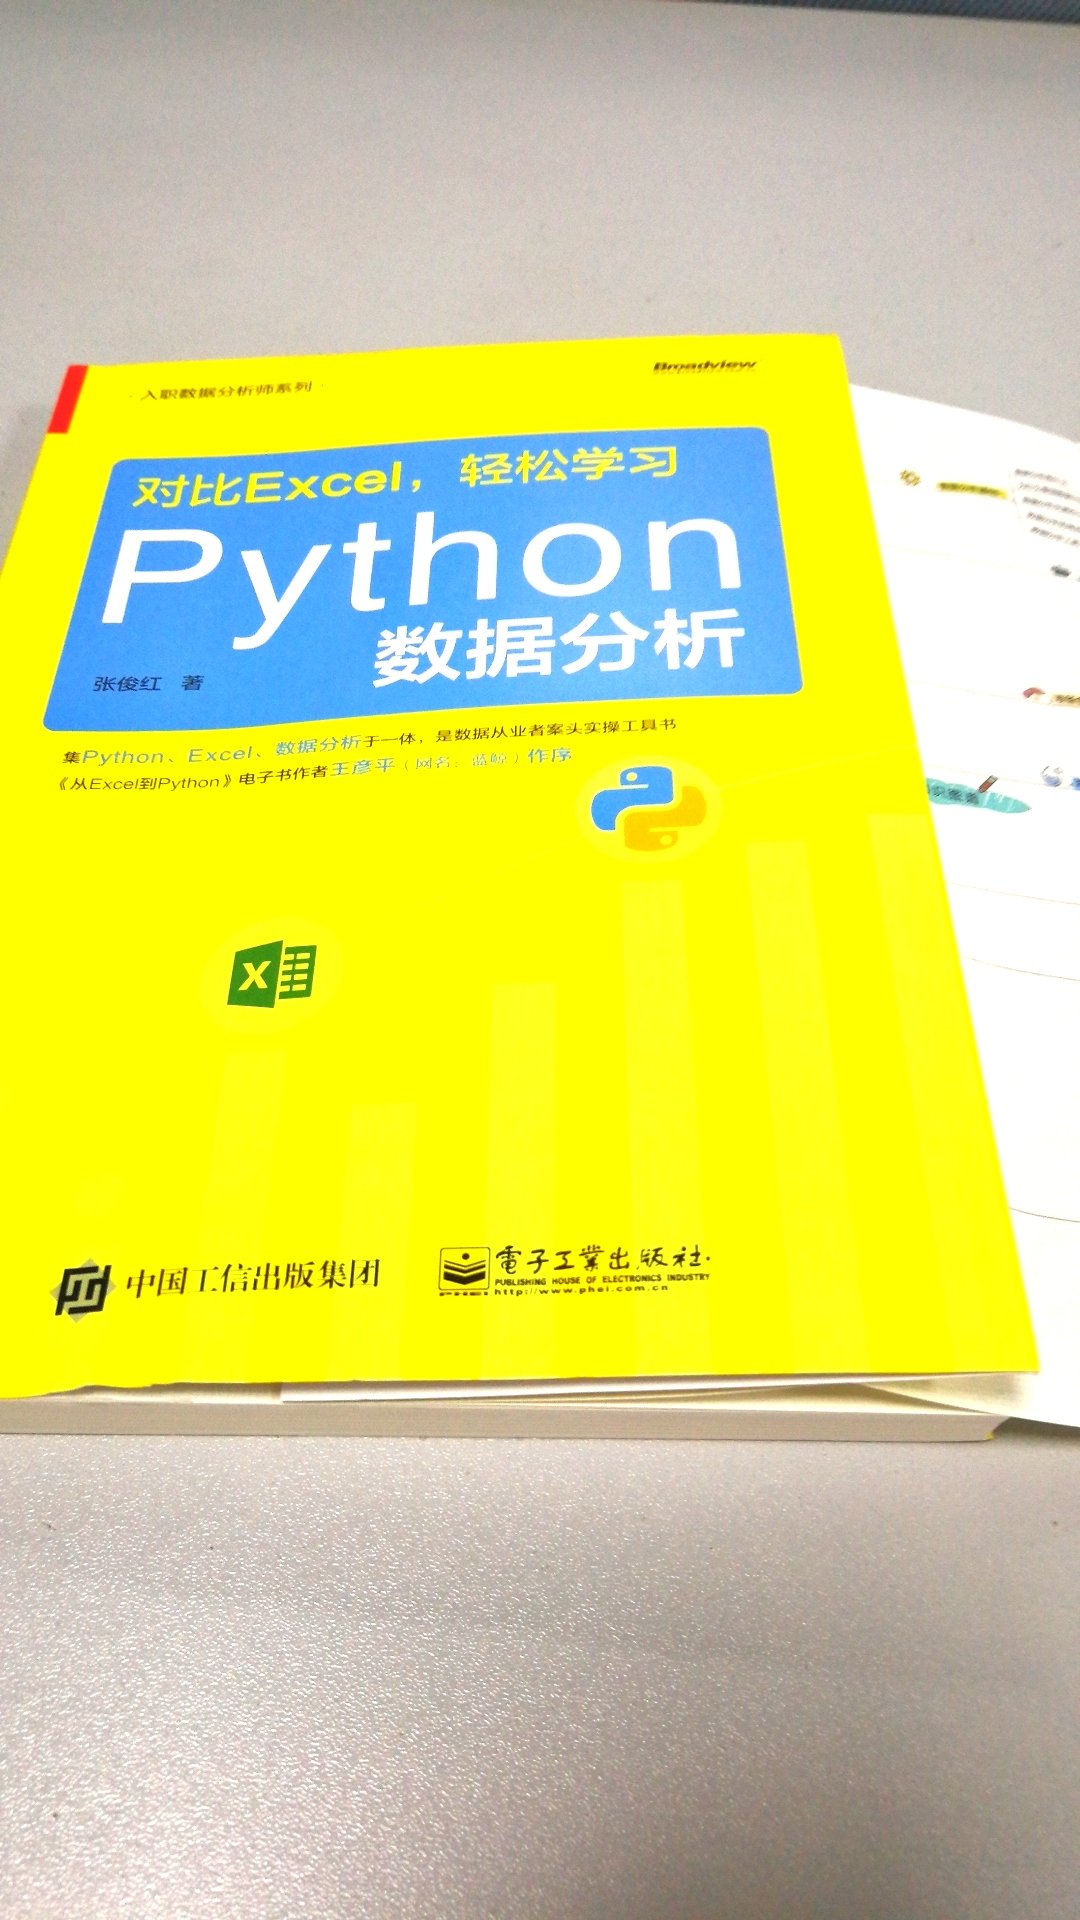 是一本数据分析书，将excel与python对比结合学习的